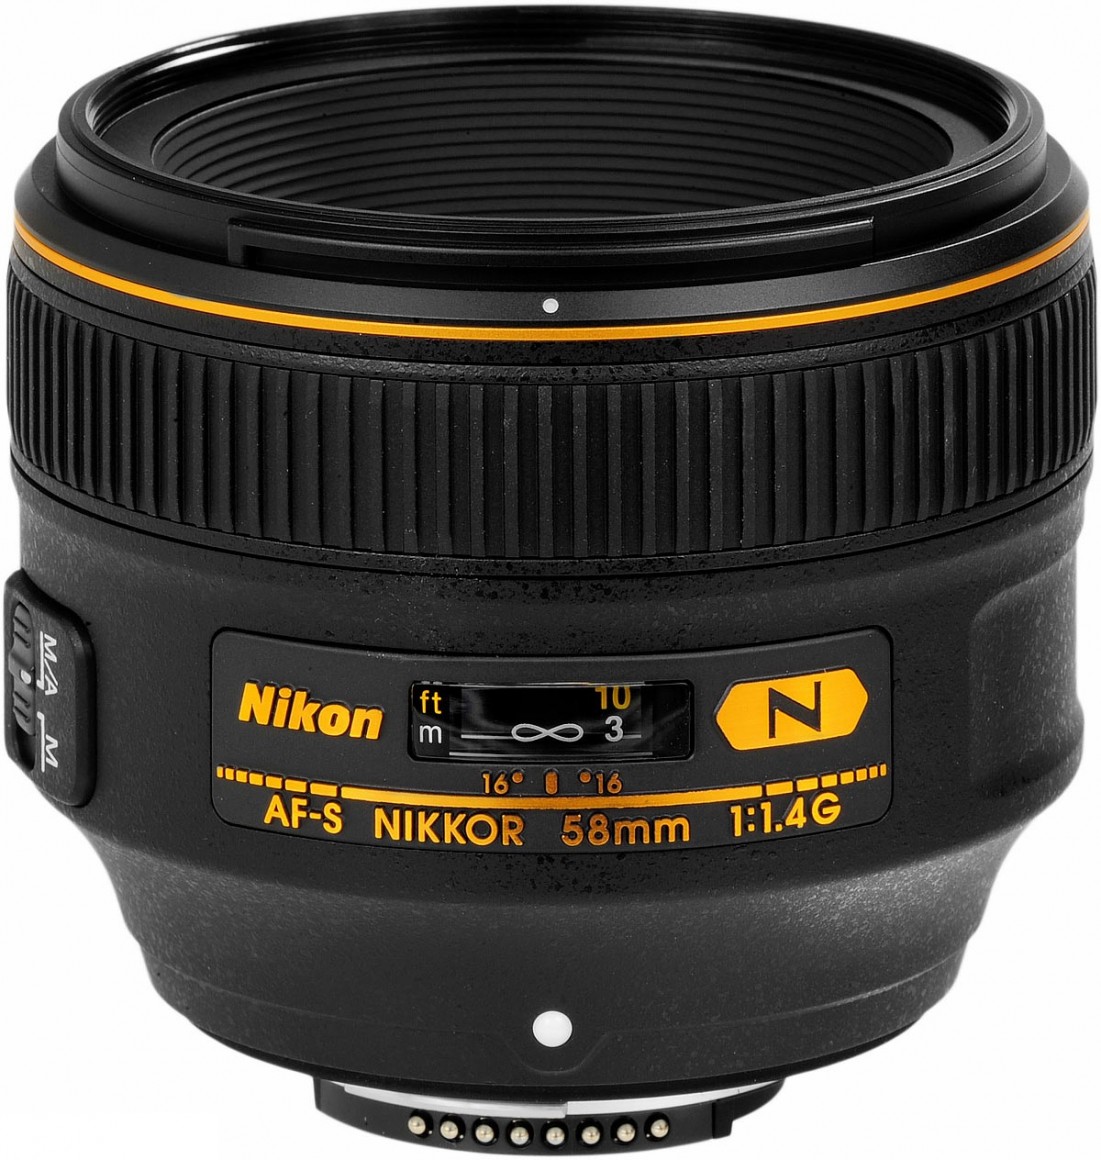 Nikon AF-S NIKKOR 58mm F/1.4G